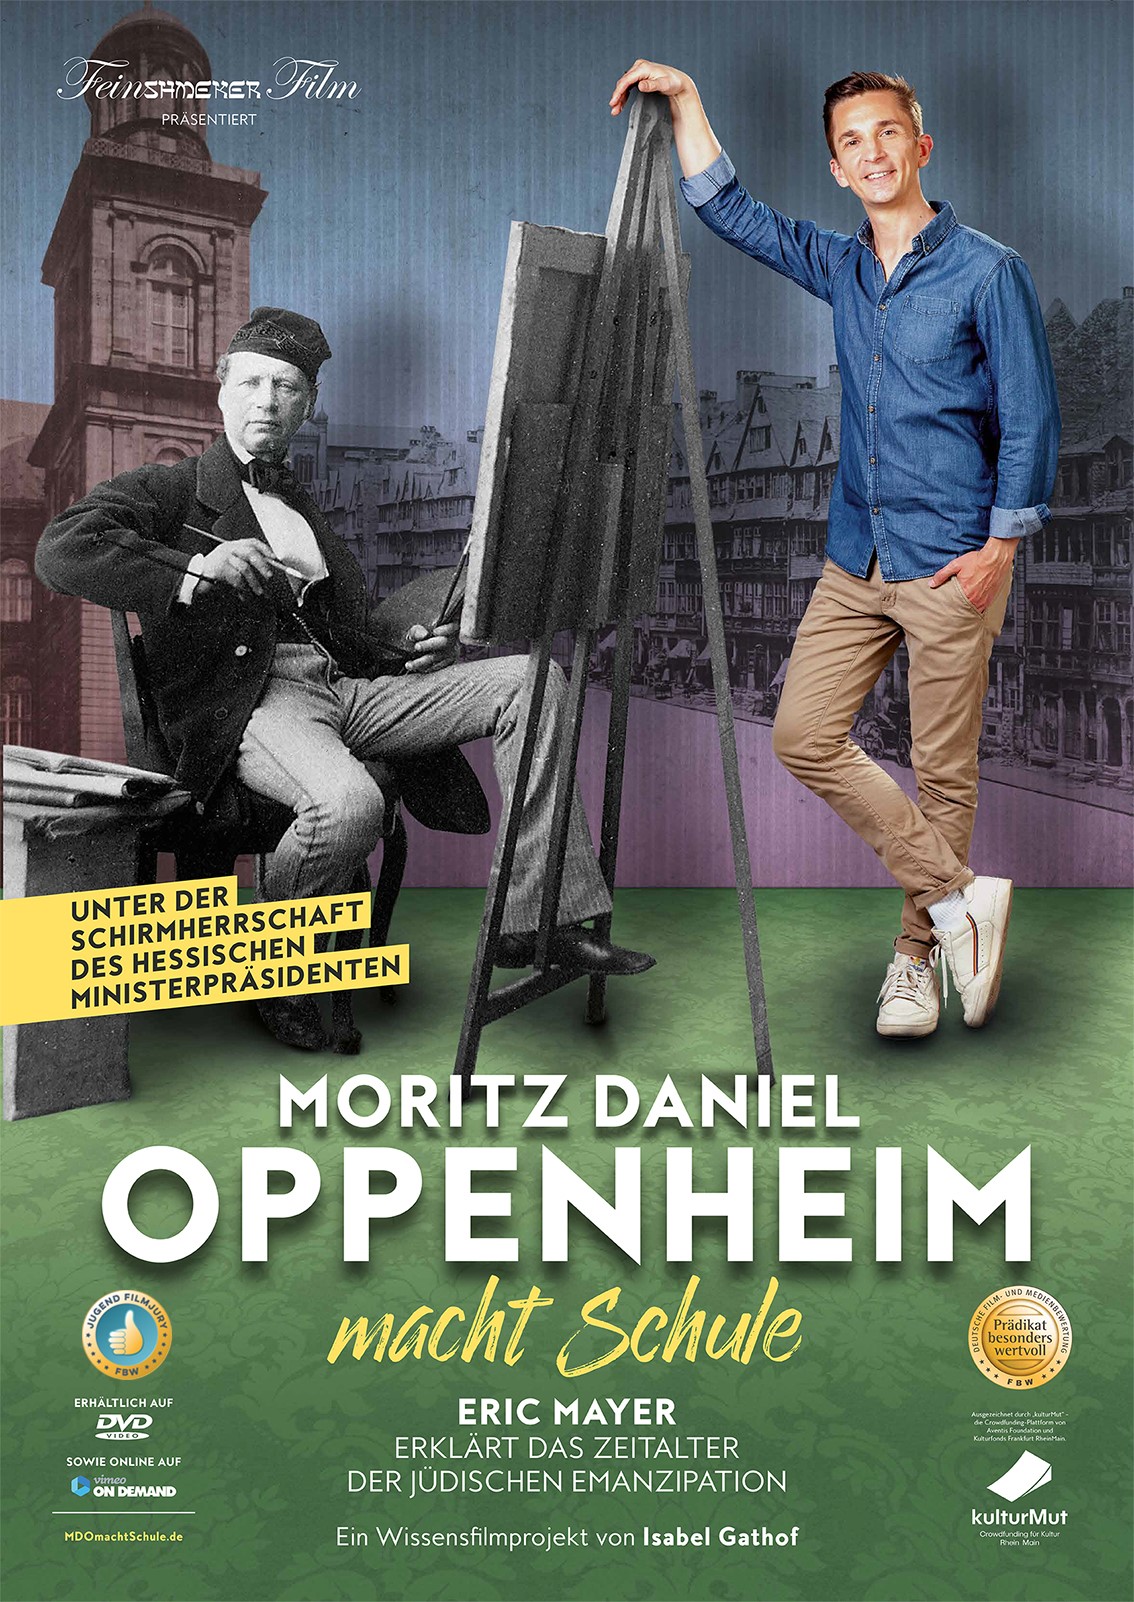 Moritz Daniel Oppenheim macht Schule